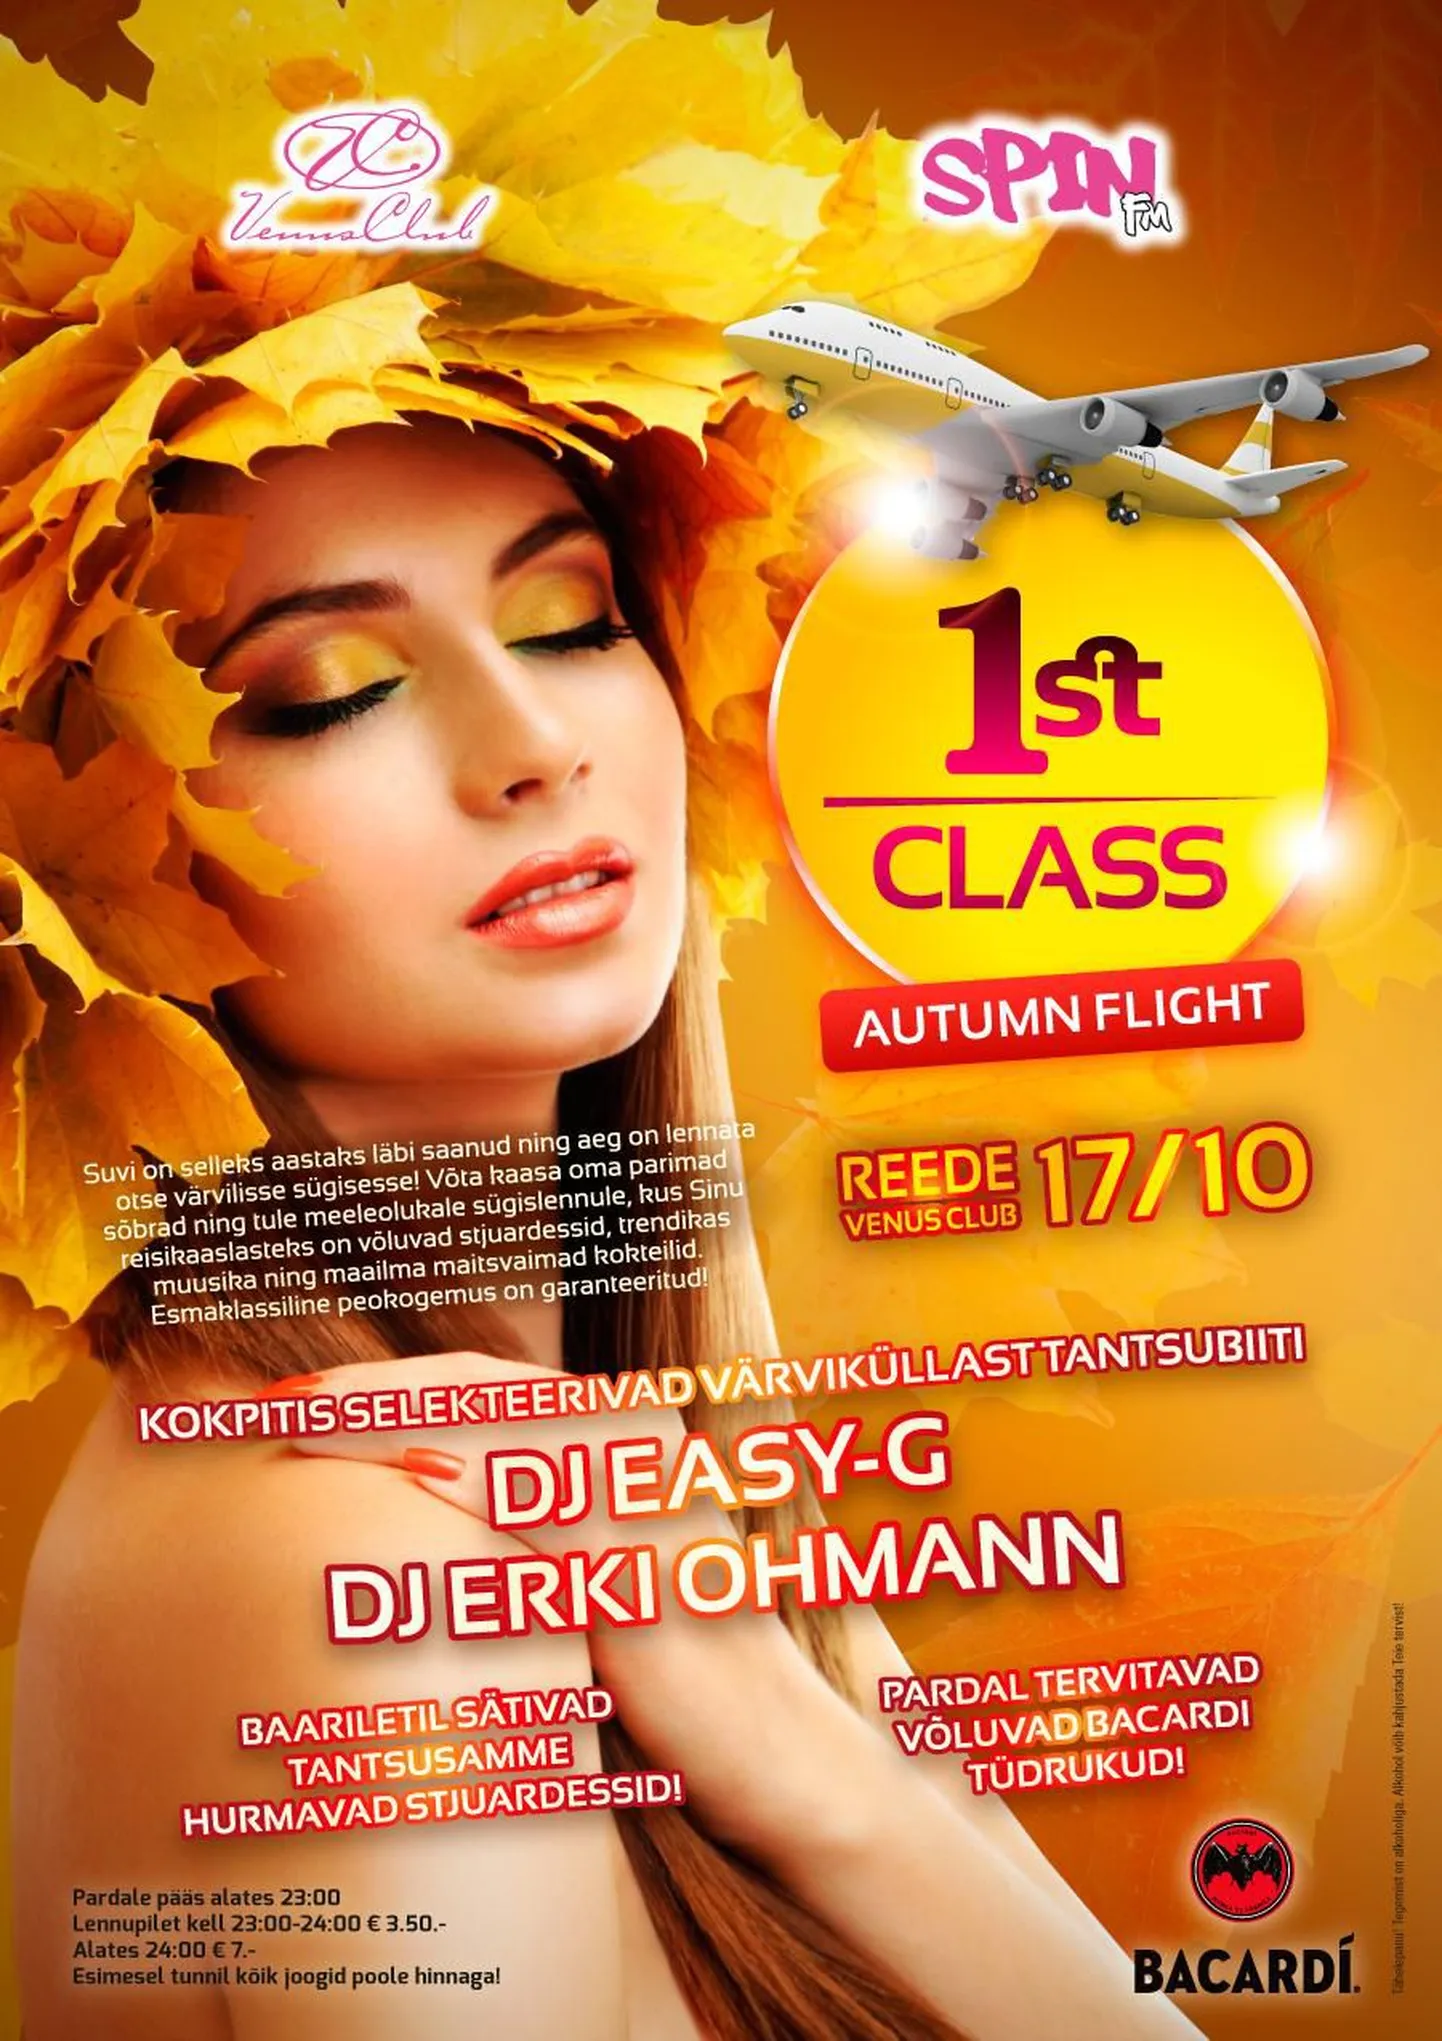 FIRST CLASS: AUTUMN FLIGHT